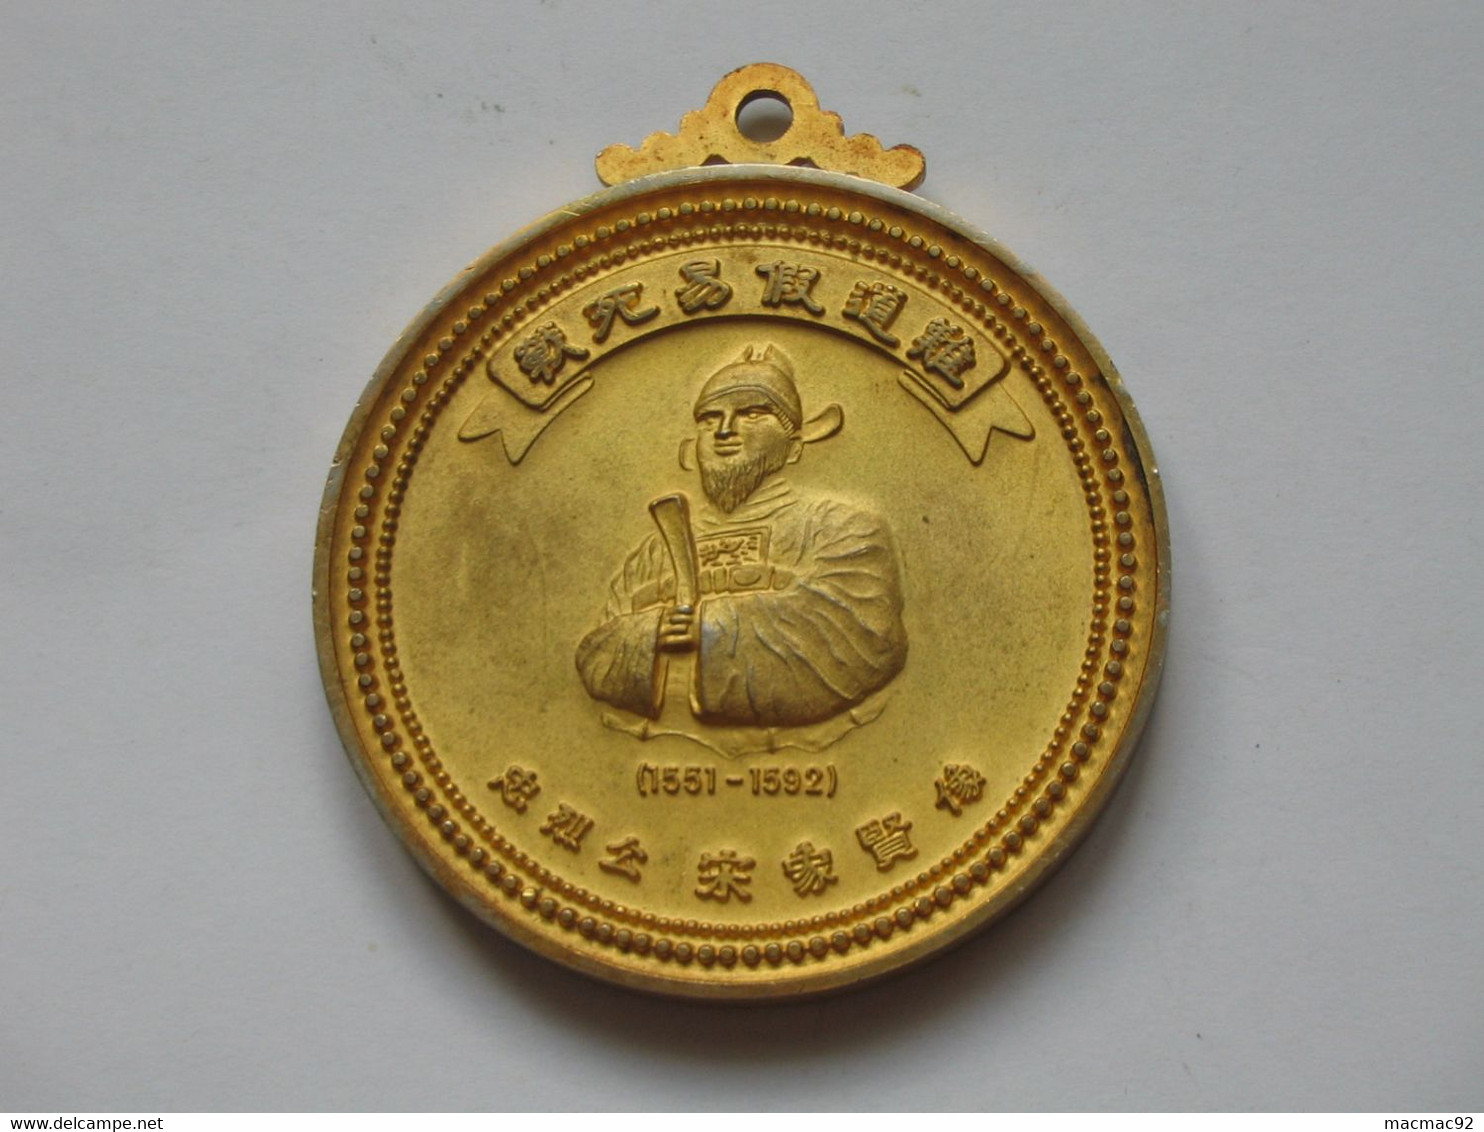 MAGNIFIQUE Médaille - WELCOME TO PUSAN REPUBLIC OF KOREA - MAYOR OF PUSAN  **** EN ACHAT IMMEDIAT  **** - Monarchia / Nobiltà